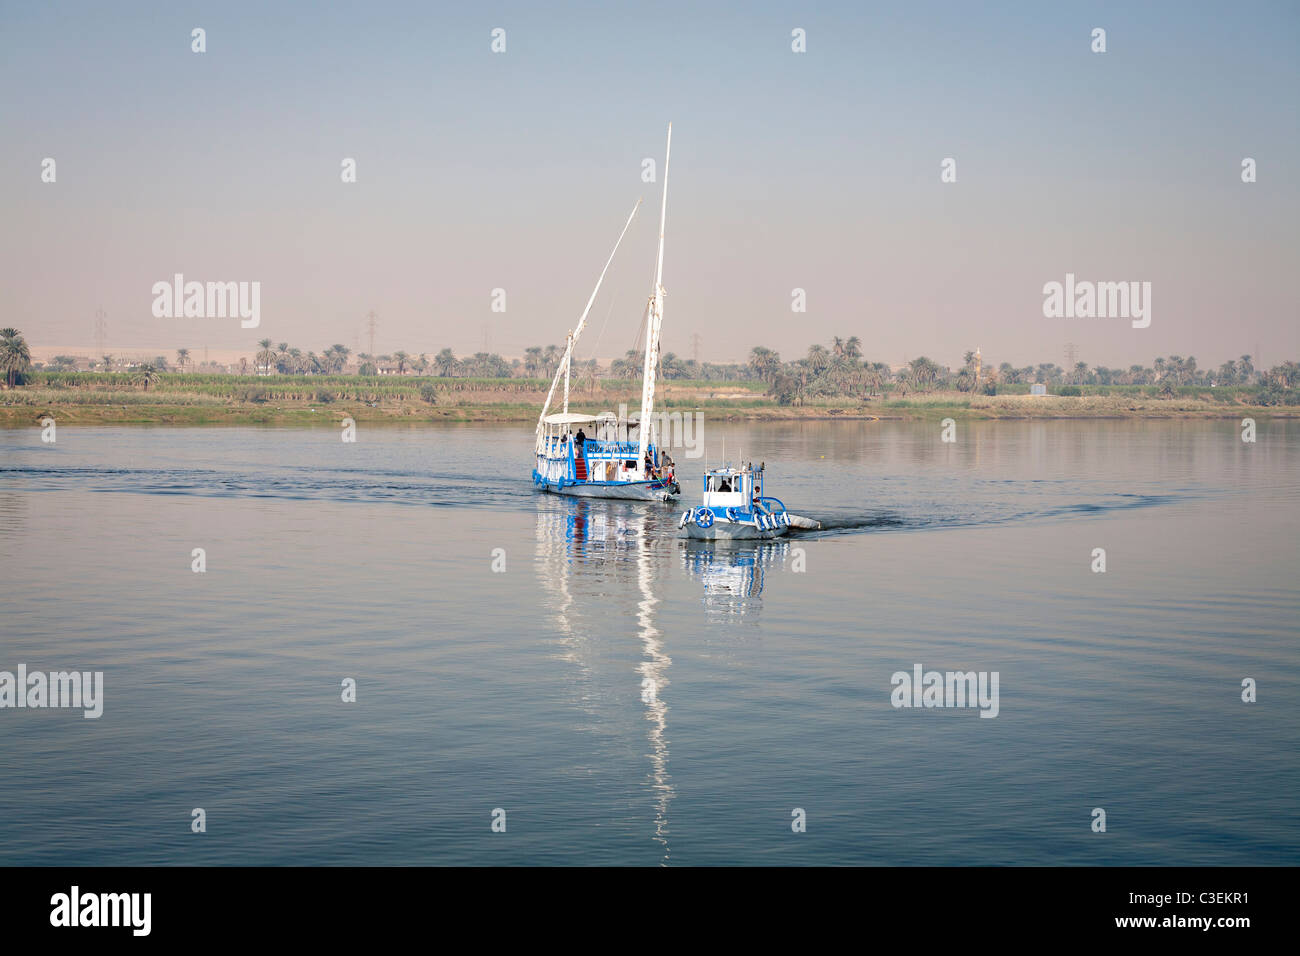 Una dahabiya siendo remolcado por pequeñas embarcaciones por el río Nilo en aguas tranquilas, Egipto, África Foto de stock